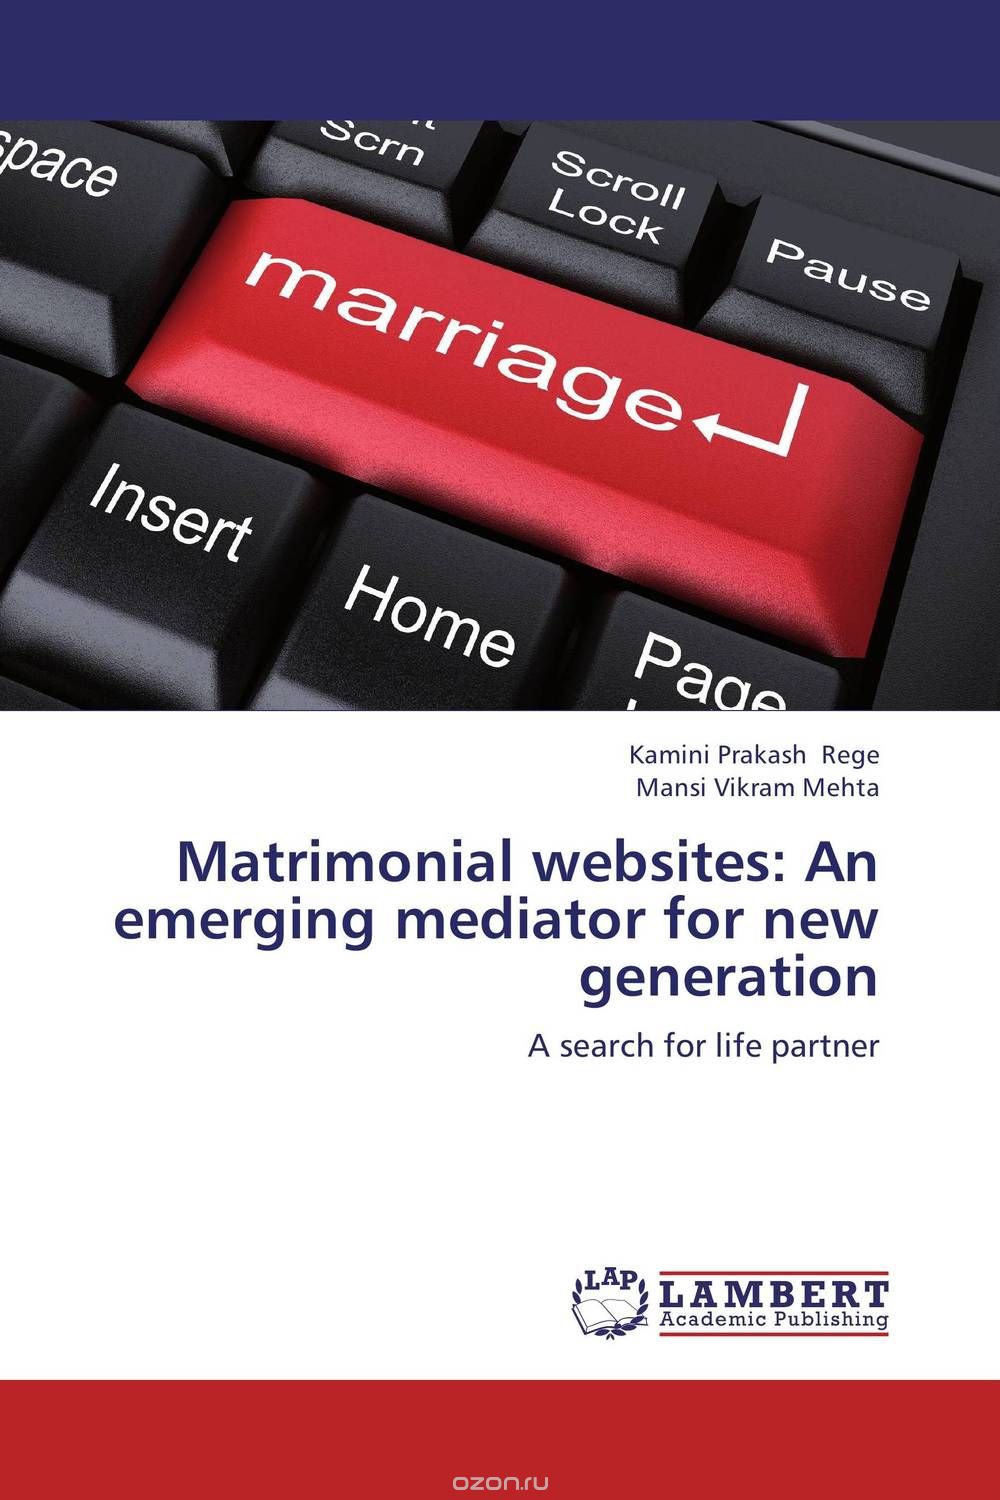 Скачать книгу "Matrimonial websites: An emerging mediator for new generation"